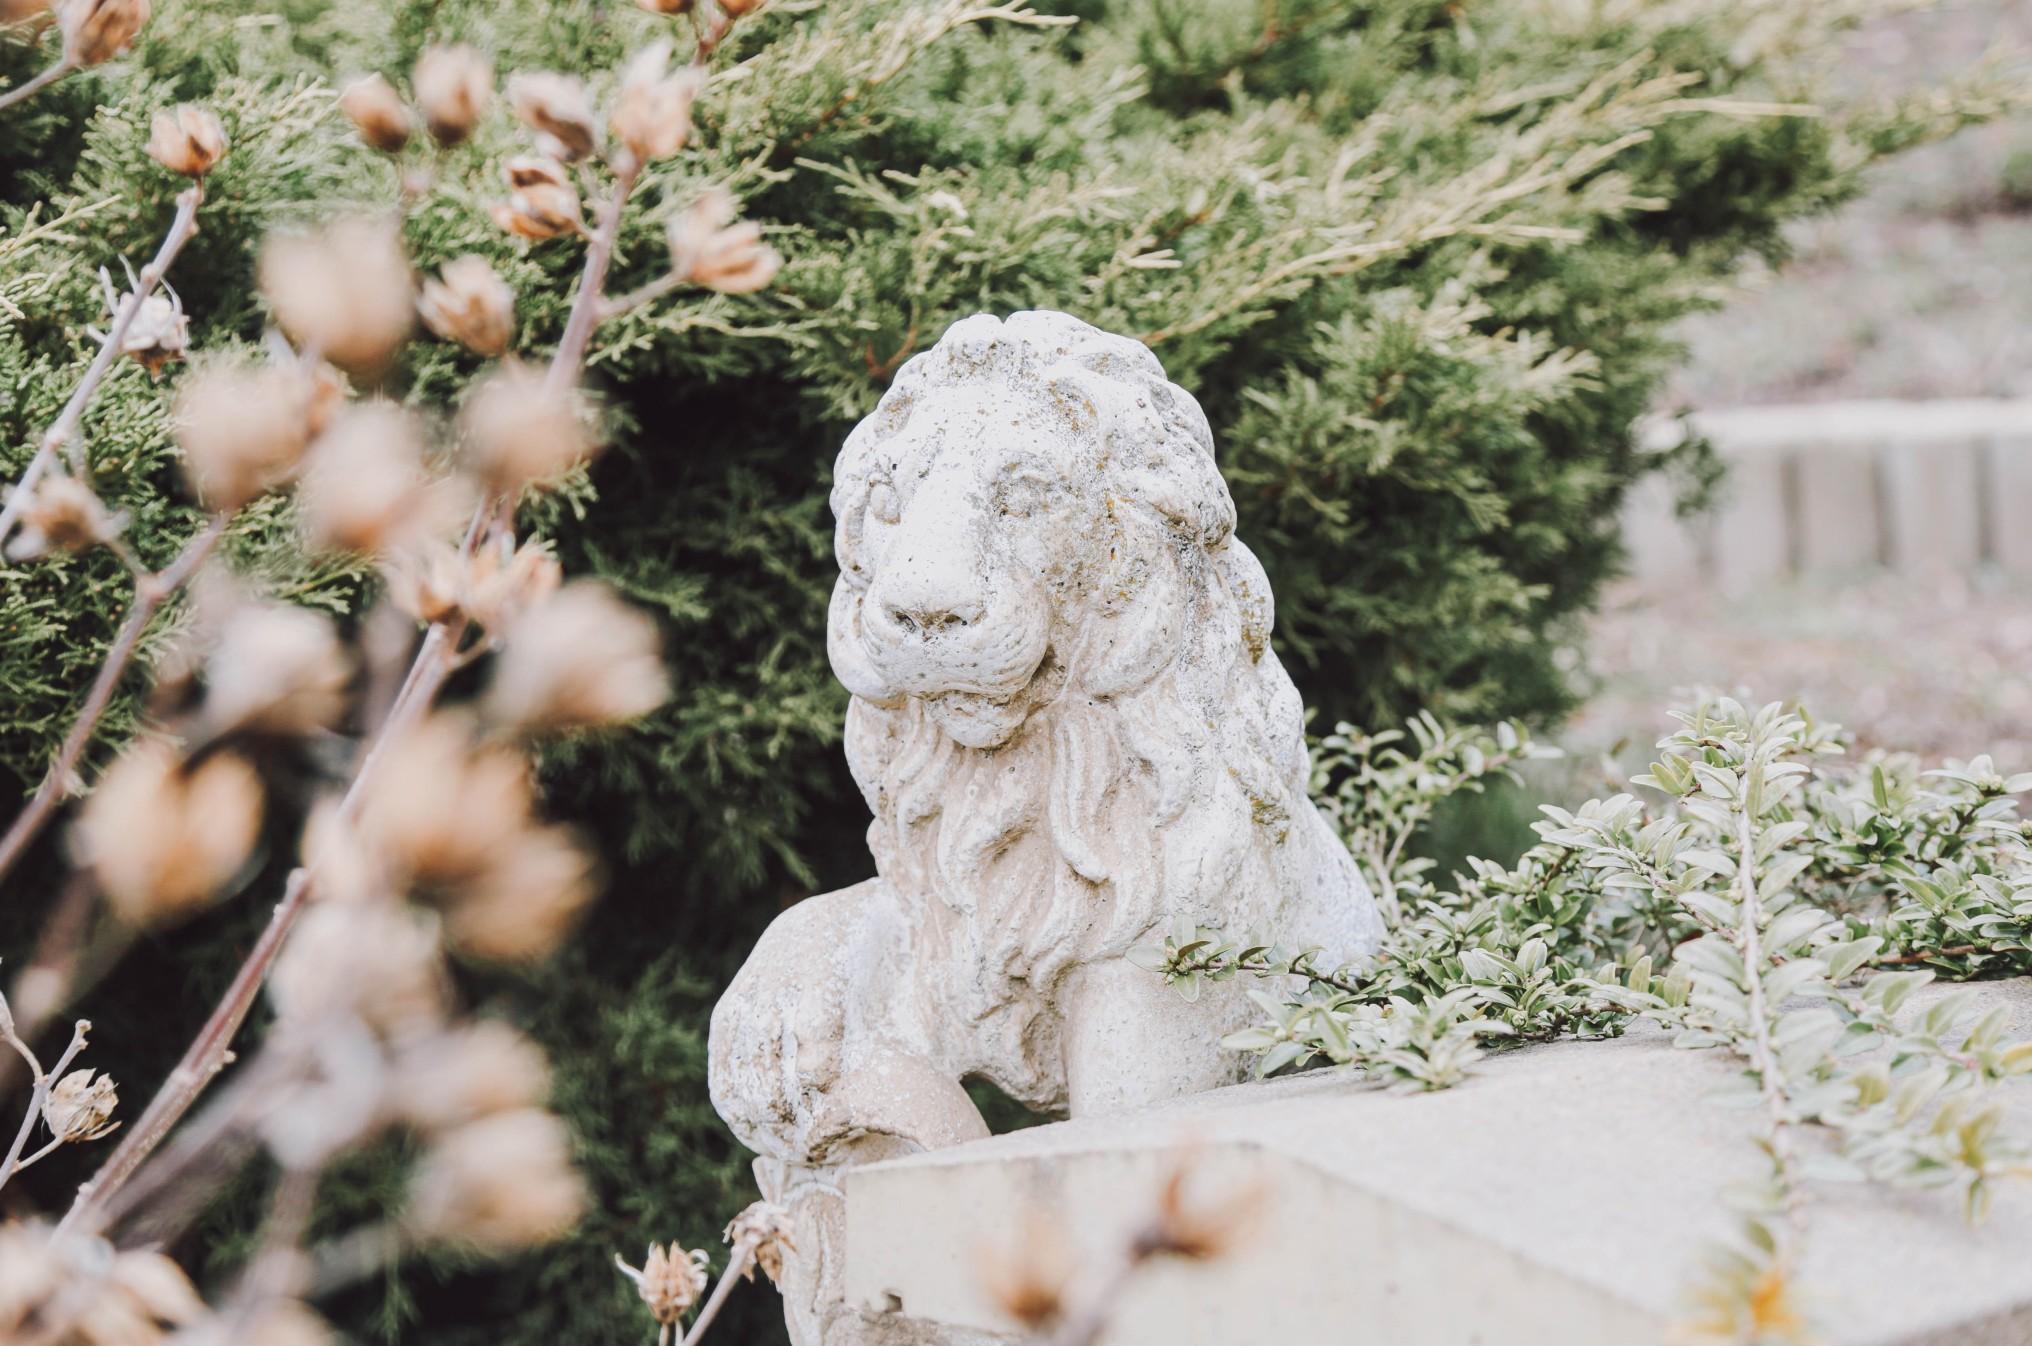 石头狮子花园雕塑叶包围。